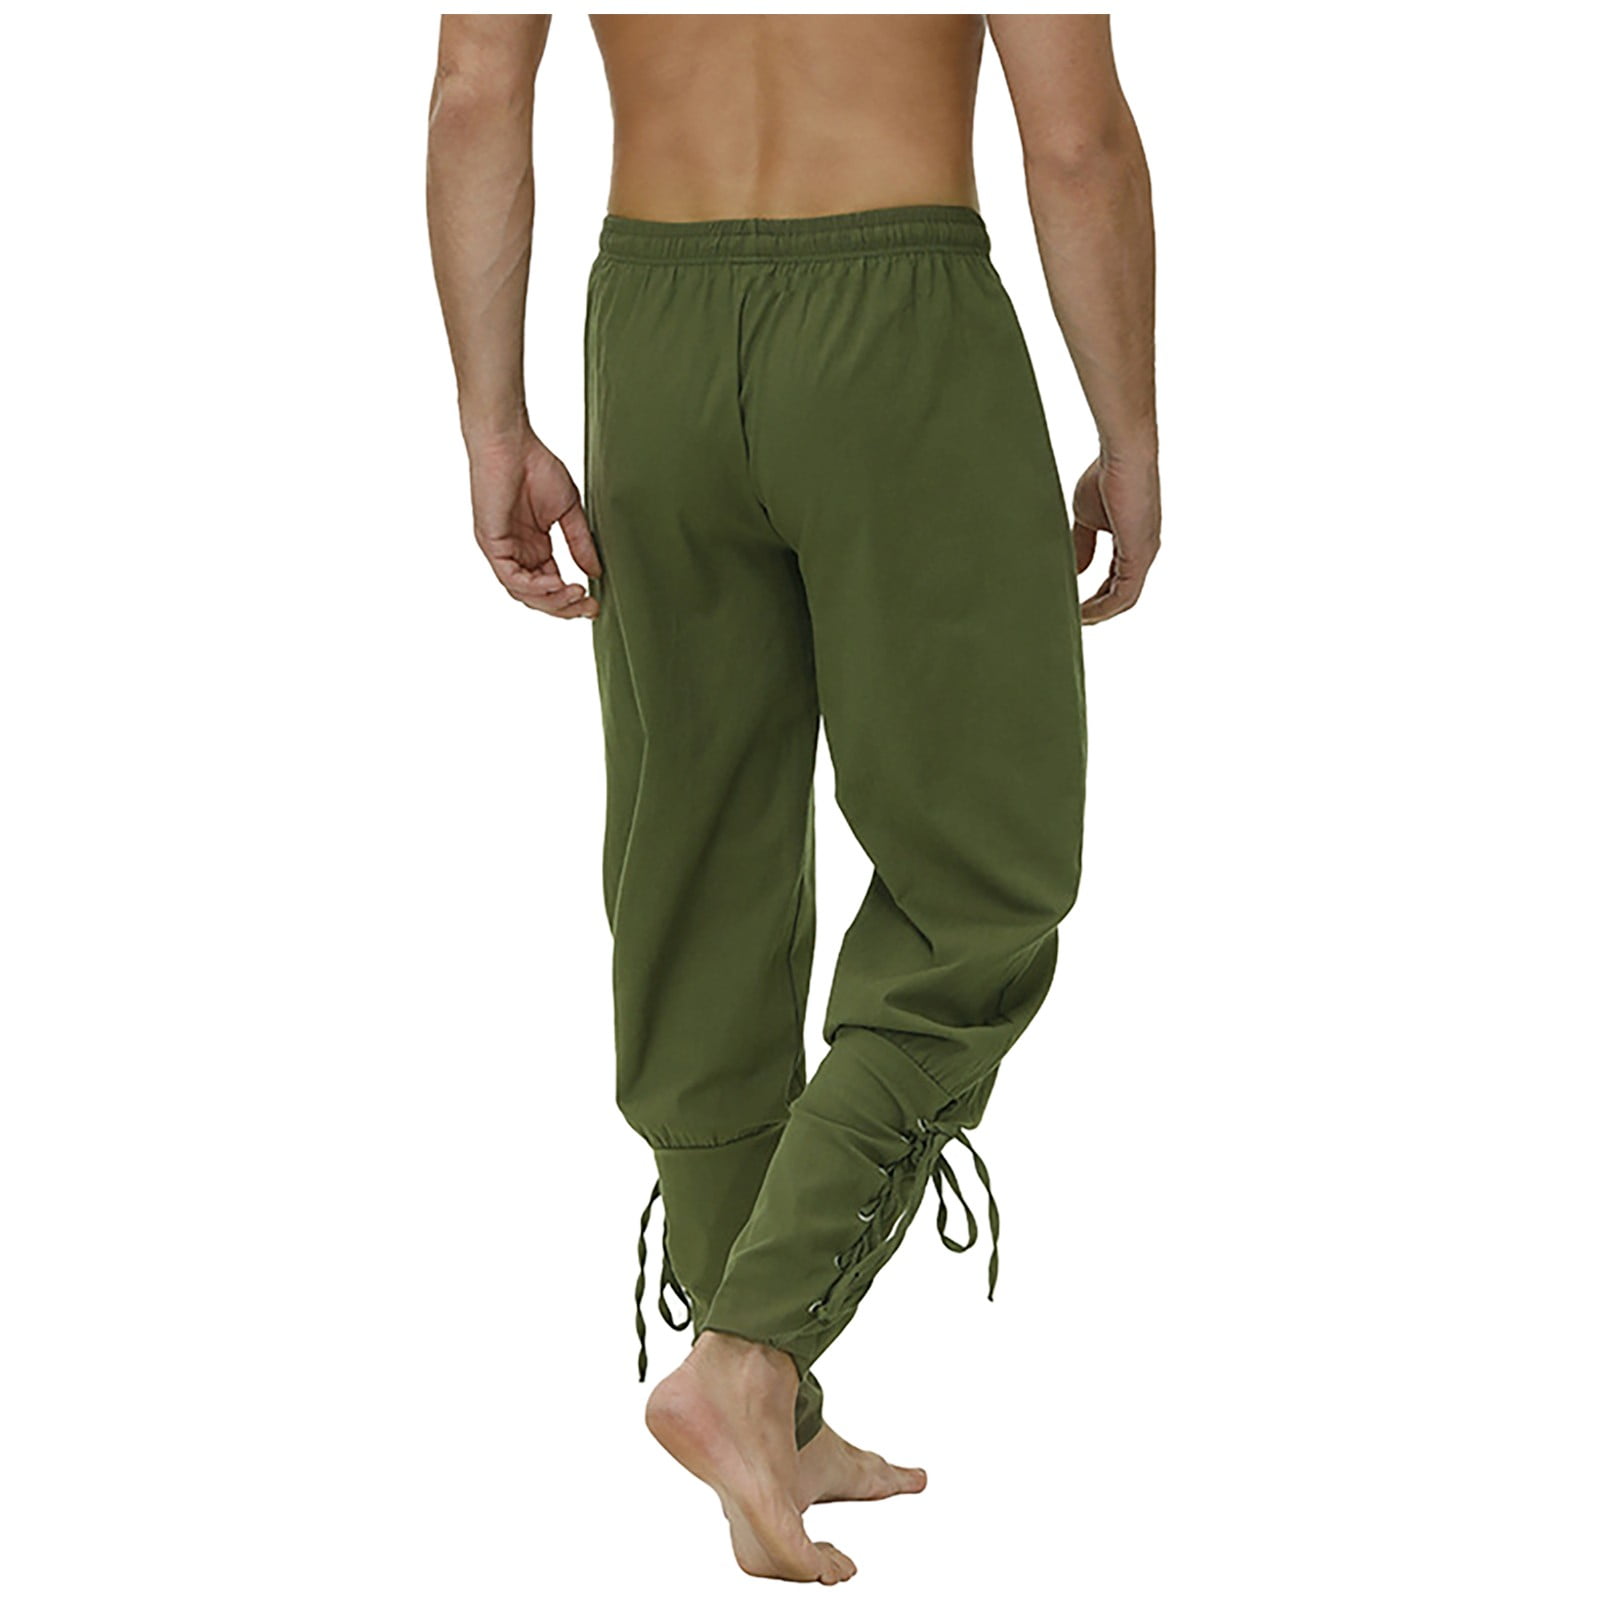 CAICJ98 Mens Sweatpants Trousers Color Sweatpant Solid Loose Fashion Men's  Casual Pant Patchwork Jogger Men's Casual Pants Khaki,XXL